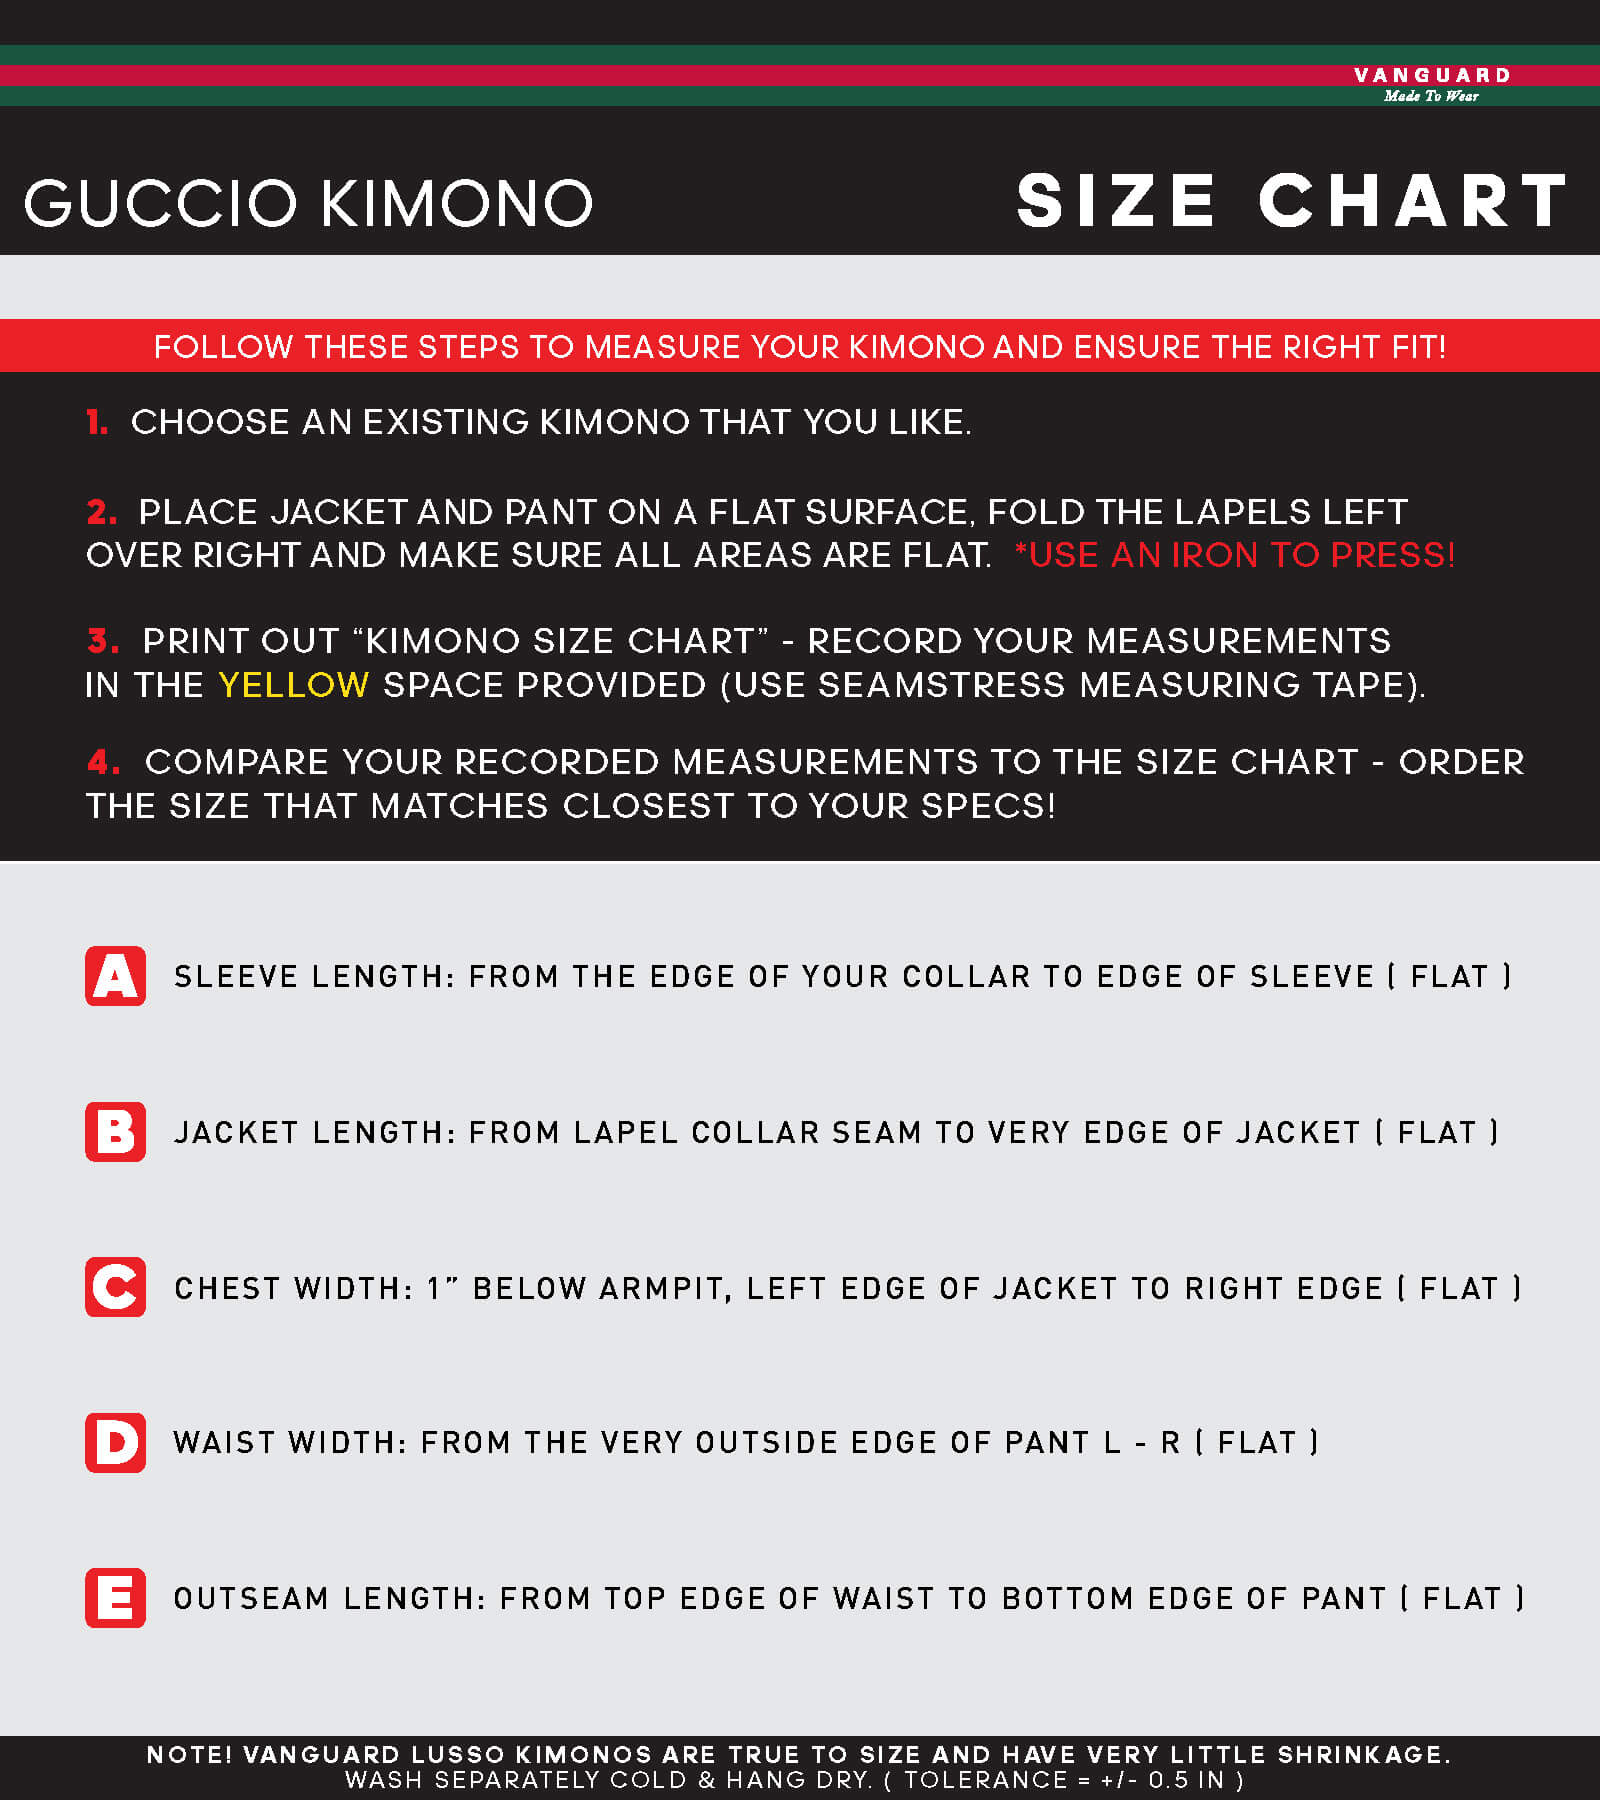 Guccio Kimono Size Chart